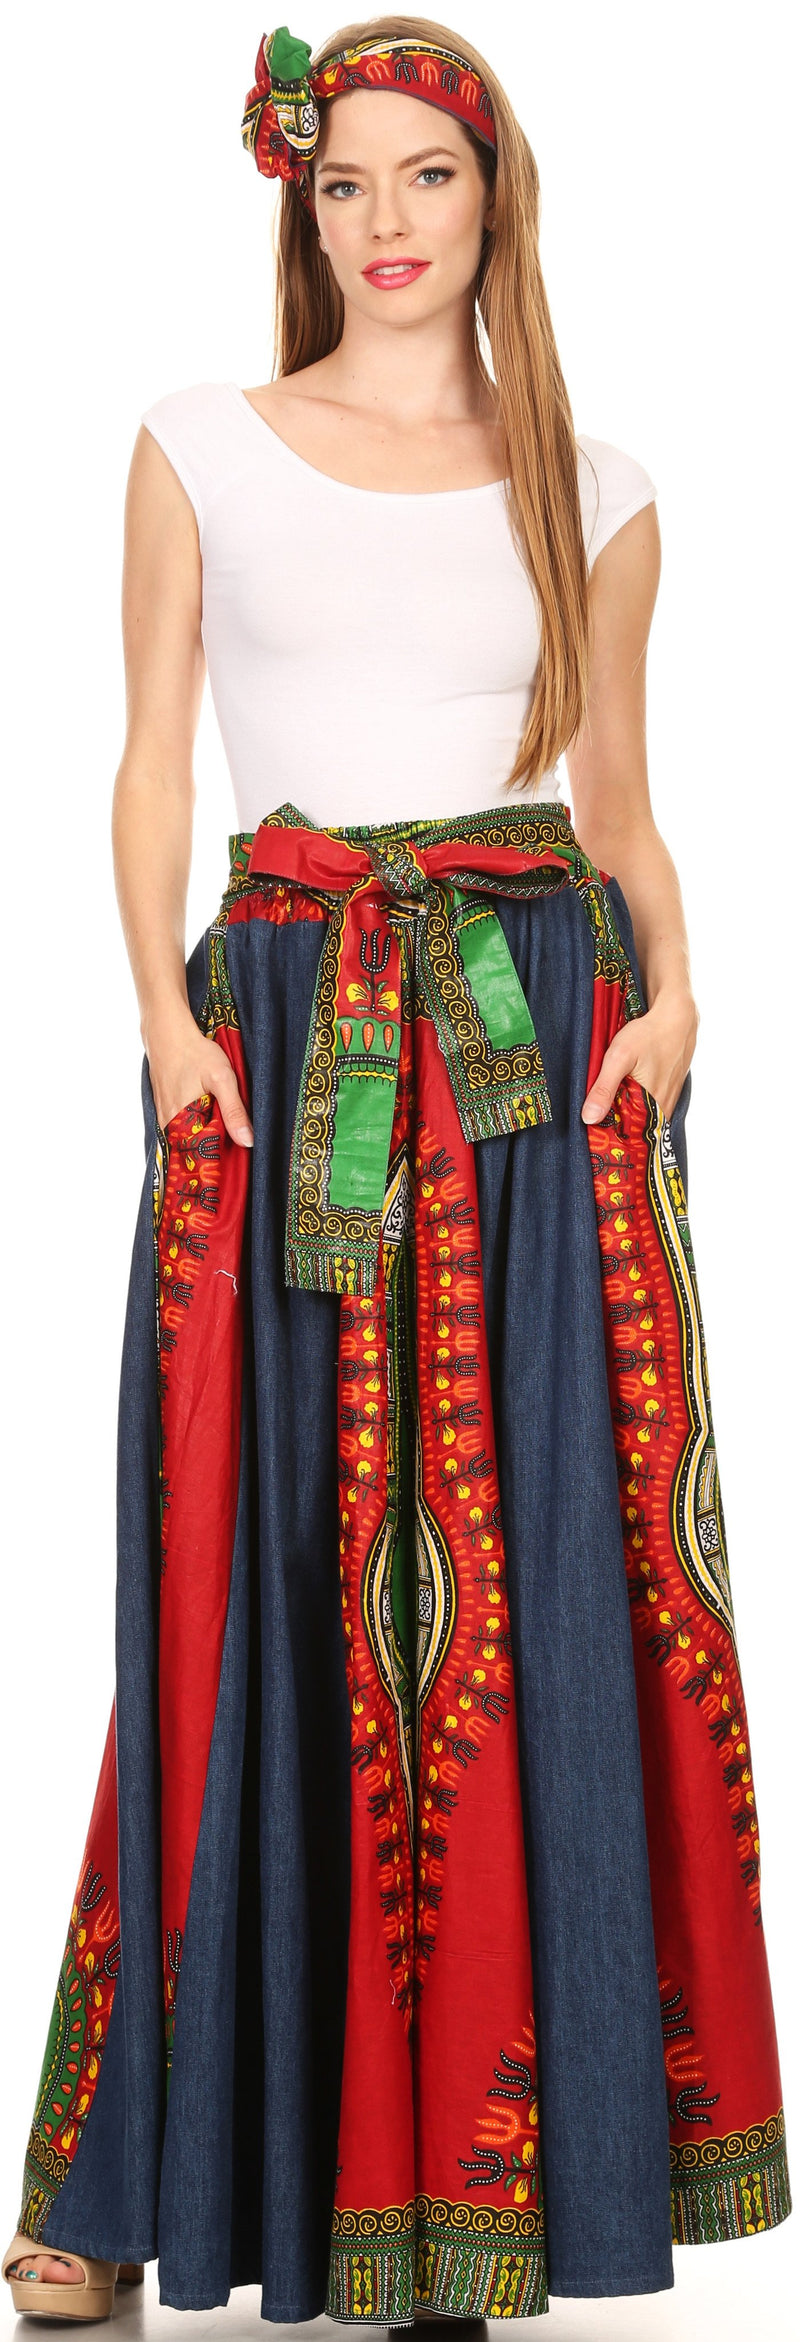 Sakkas Marah Tribal Ankara Wax Print and Denim Convertible Maxi Skirt